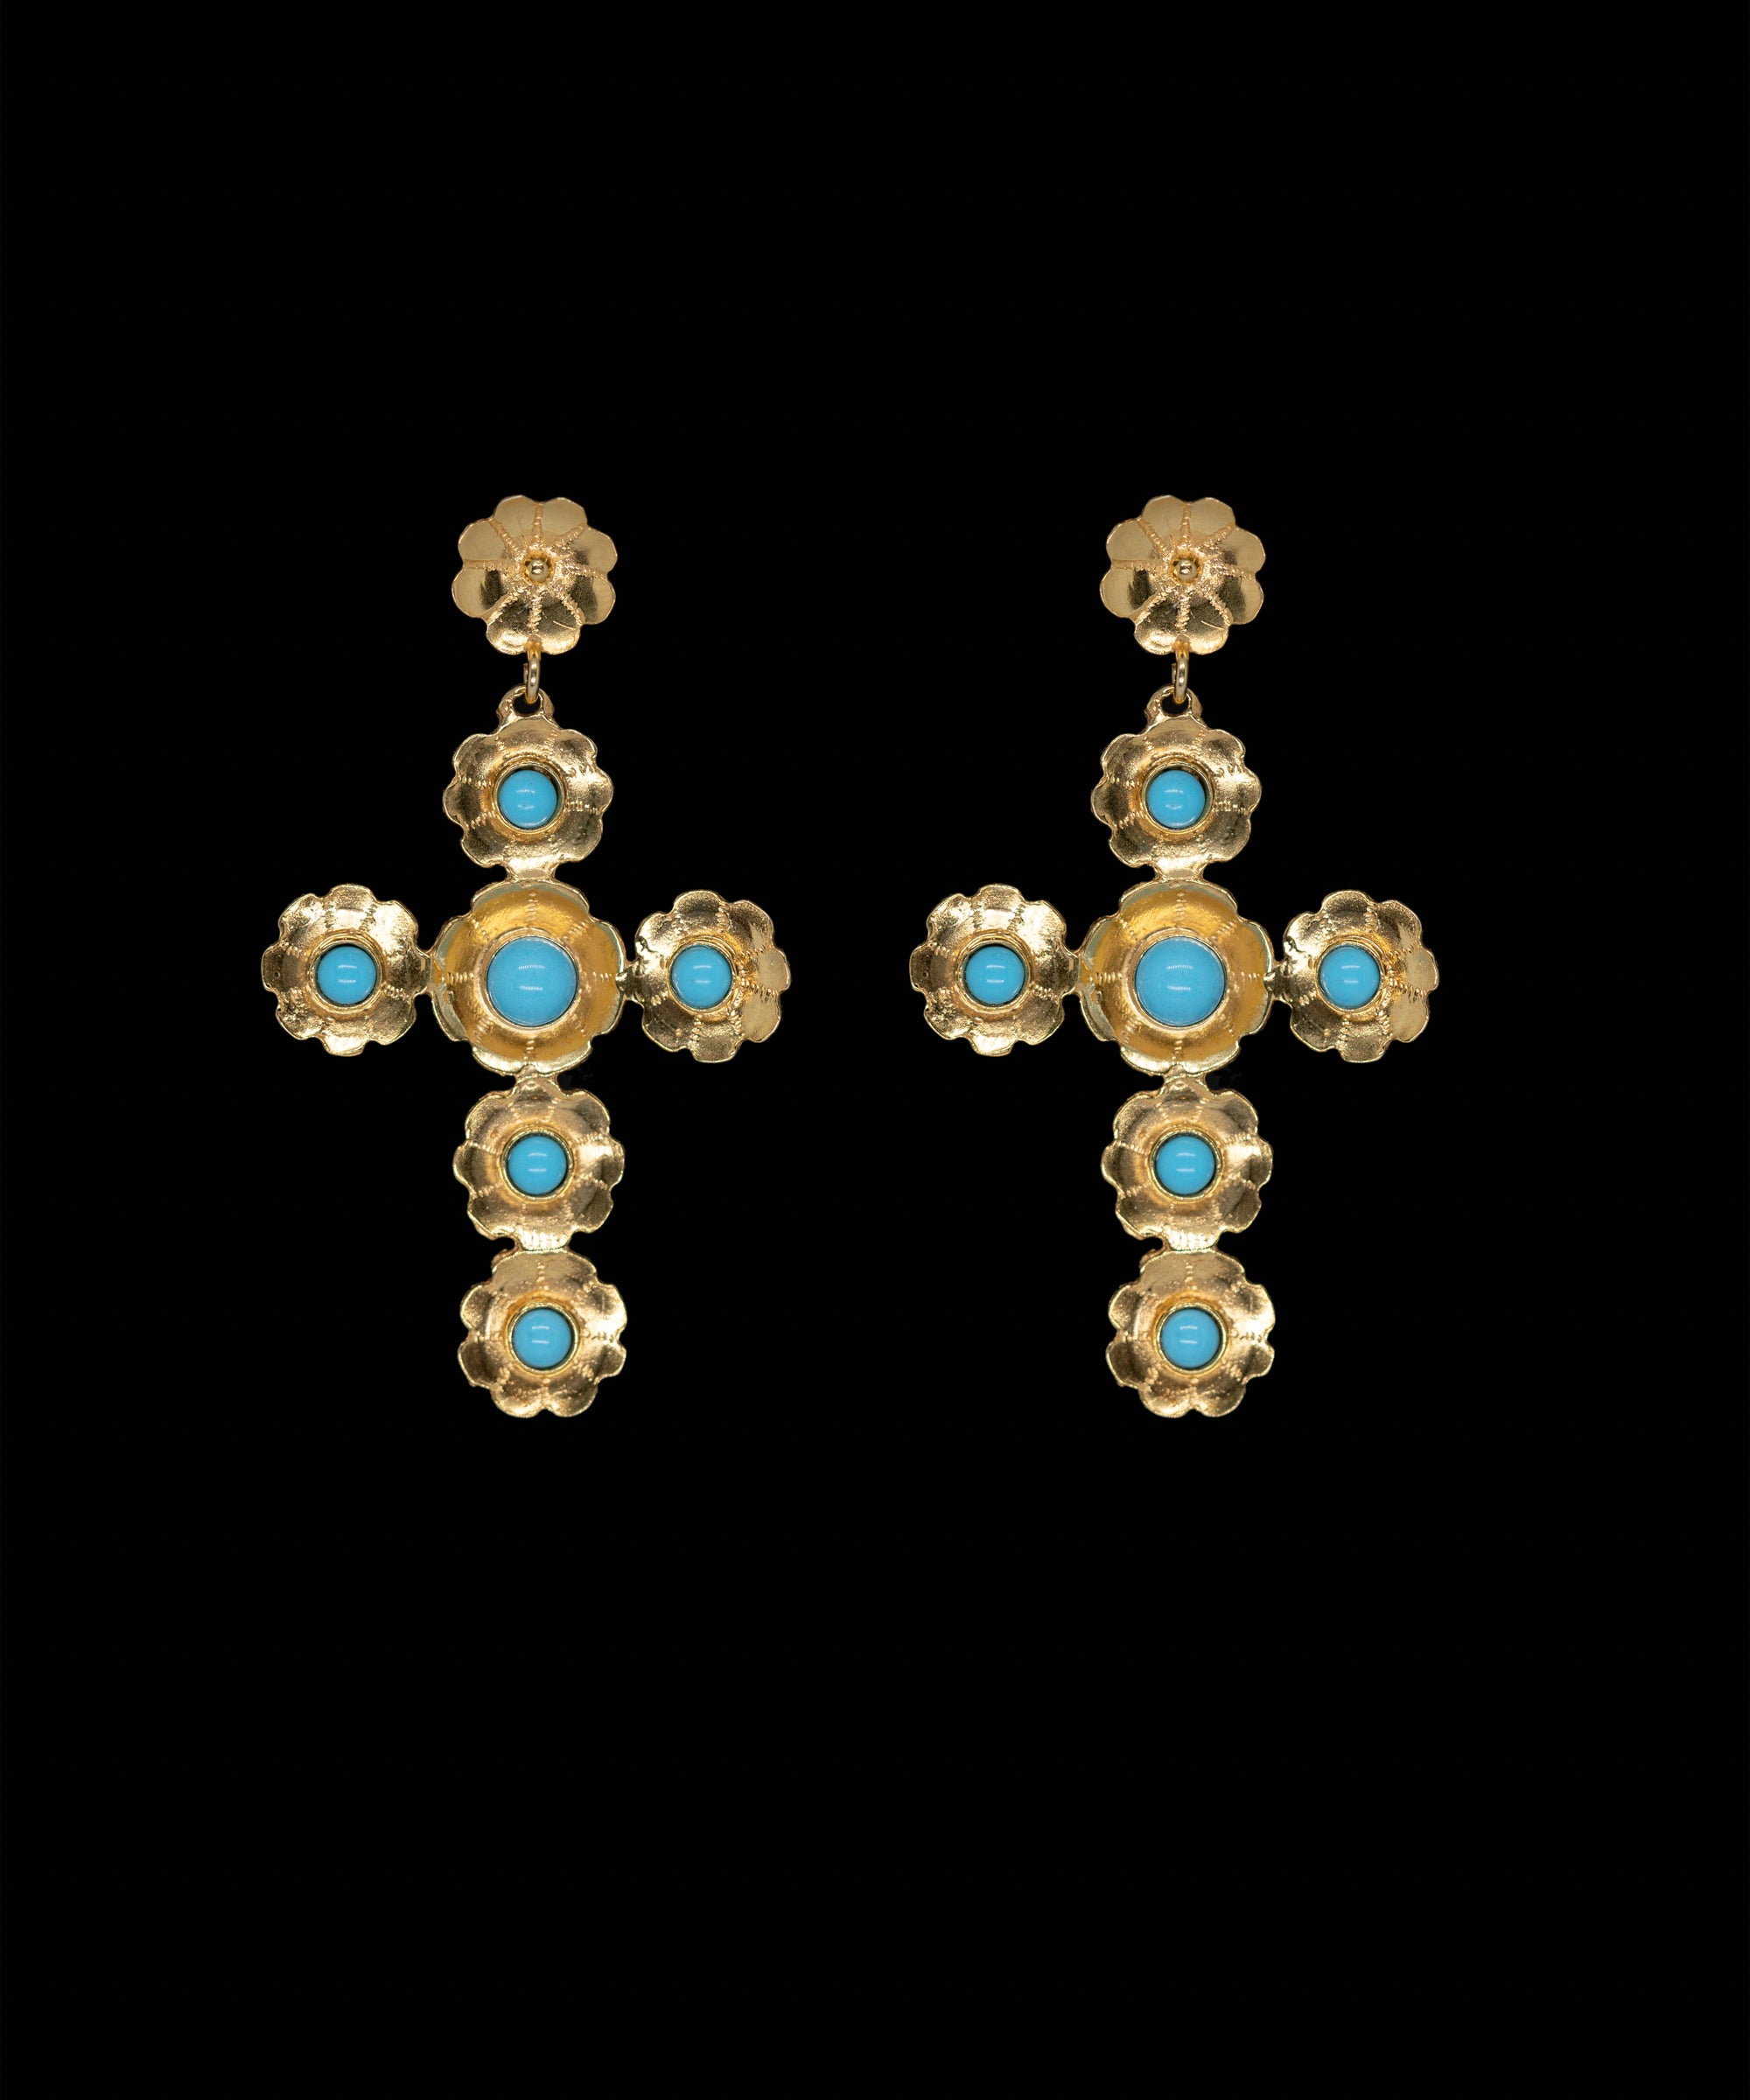 Sant Elm Cross Earrings with gemstones